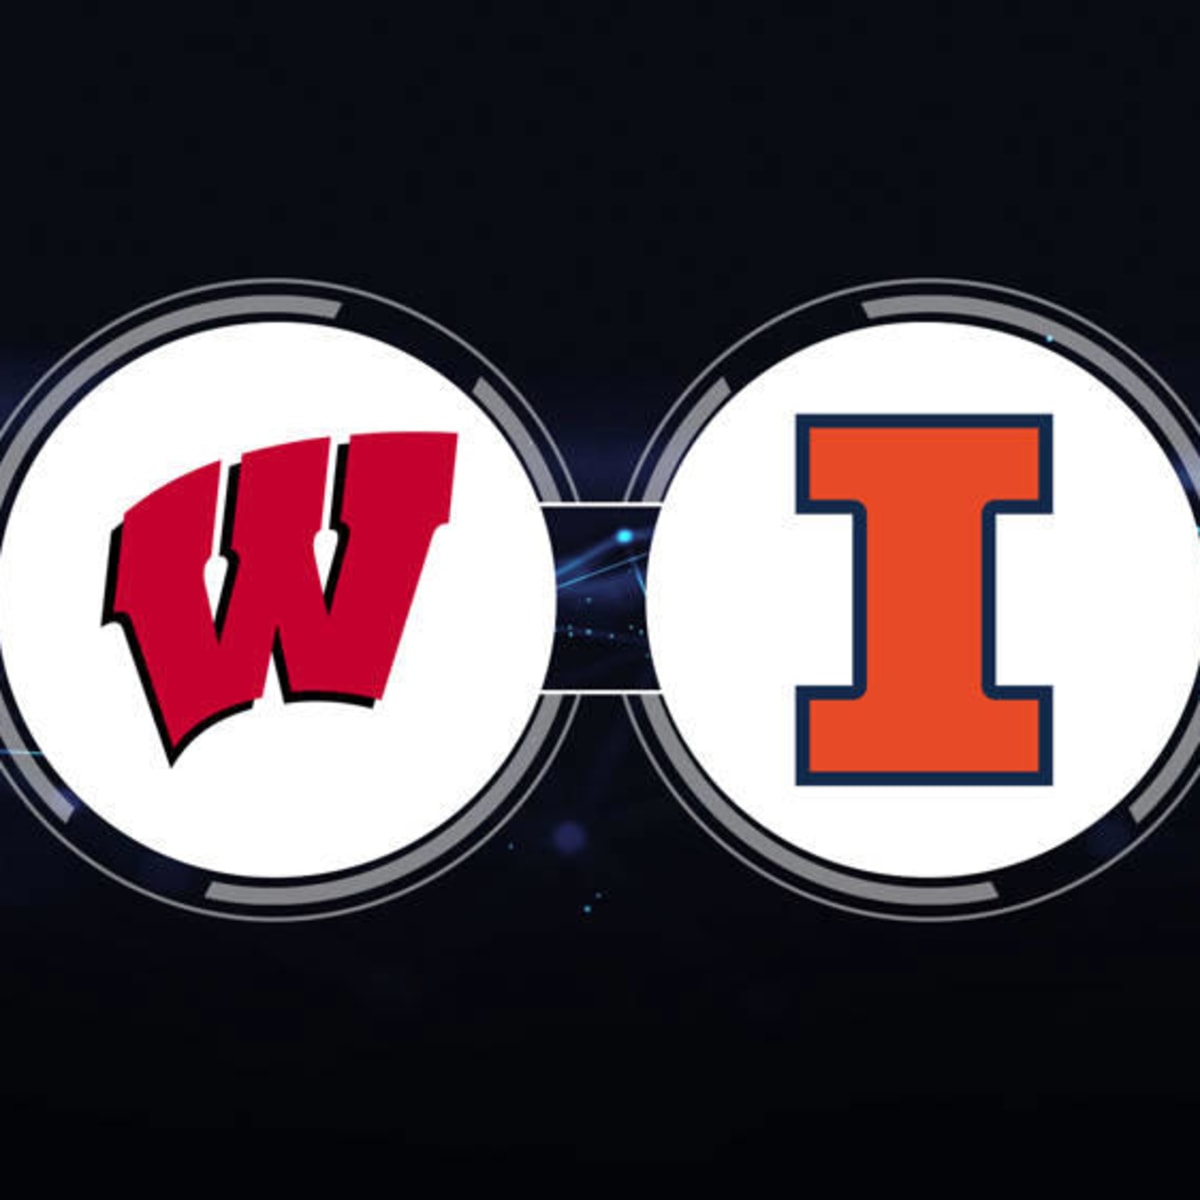 Wisconsin Badgers vs. Illinois Fighting Illini football photos